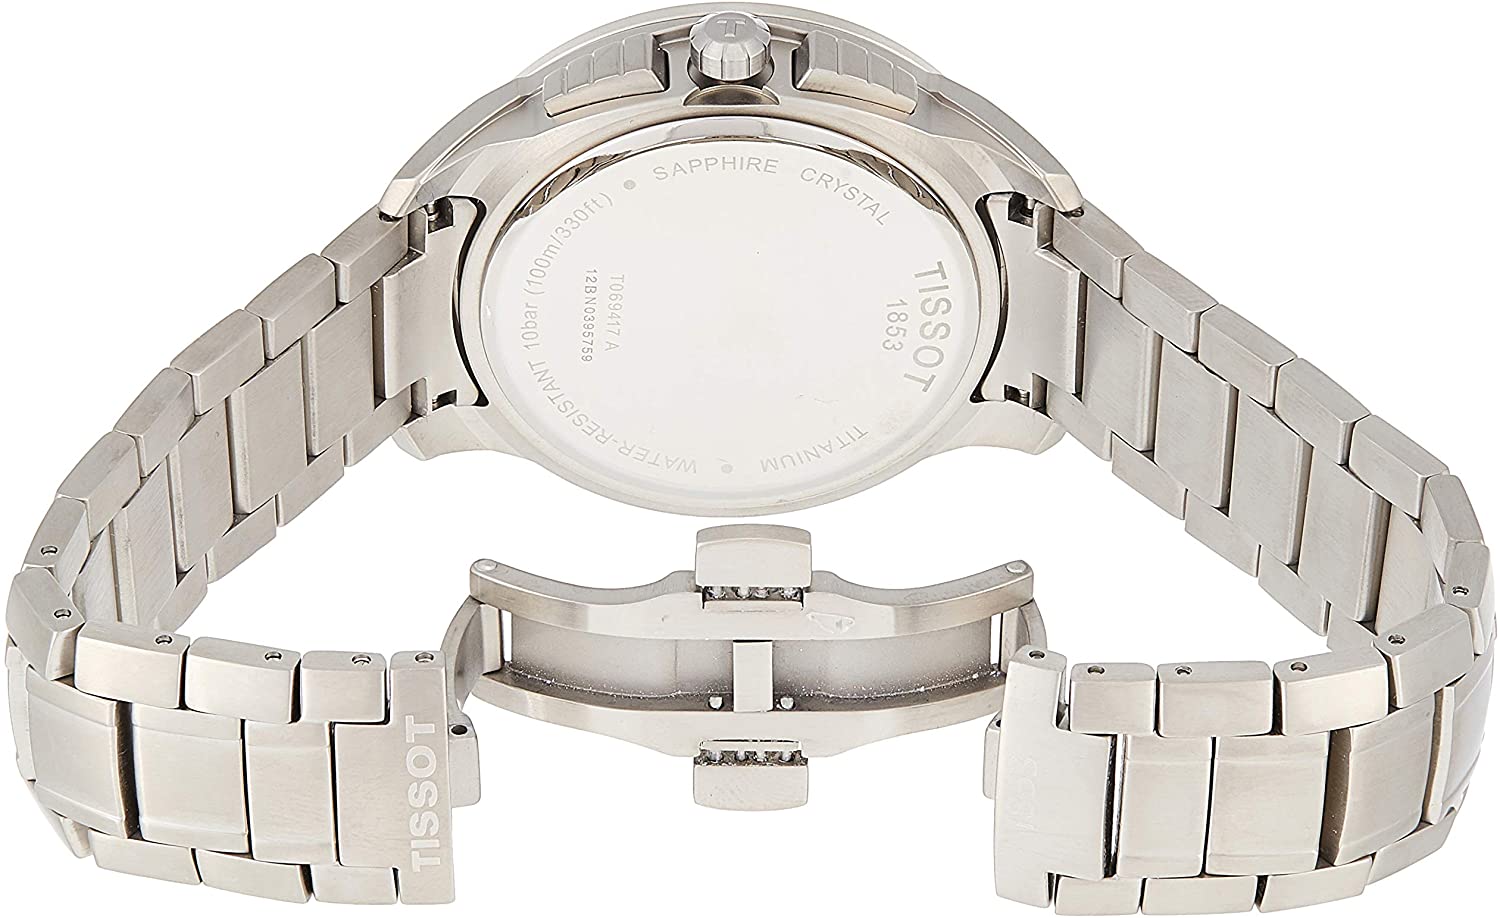 Tissot Men's Quartz Titanium Watch T0694174406100